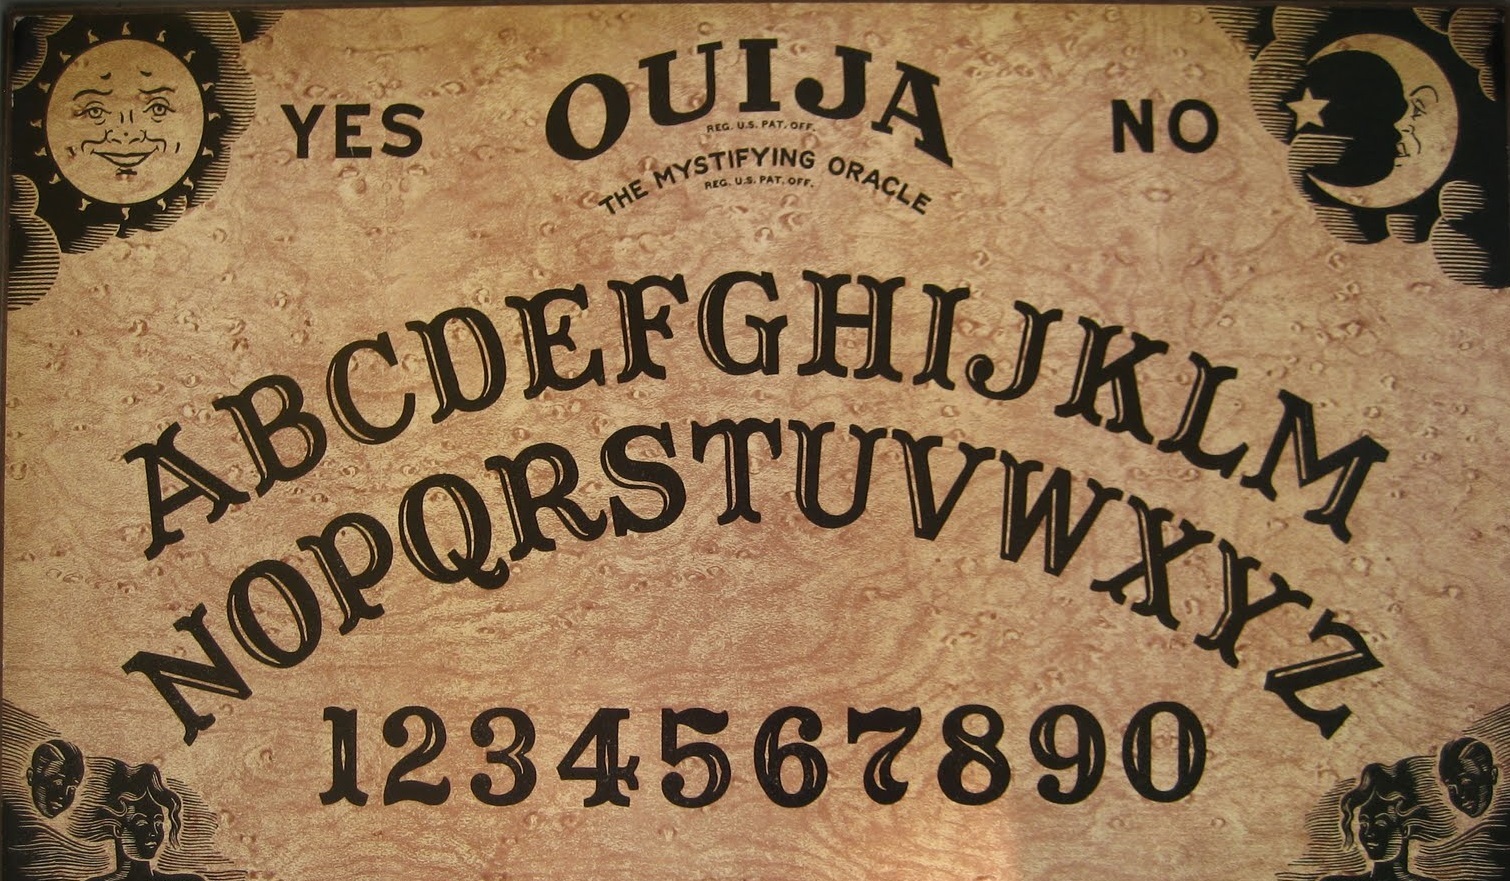 3. Ouija board designs - wide 10